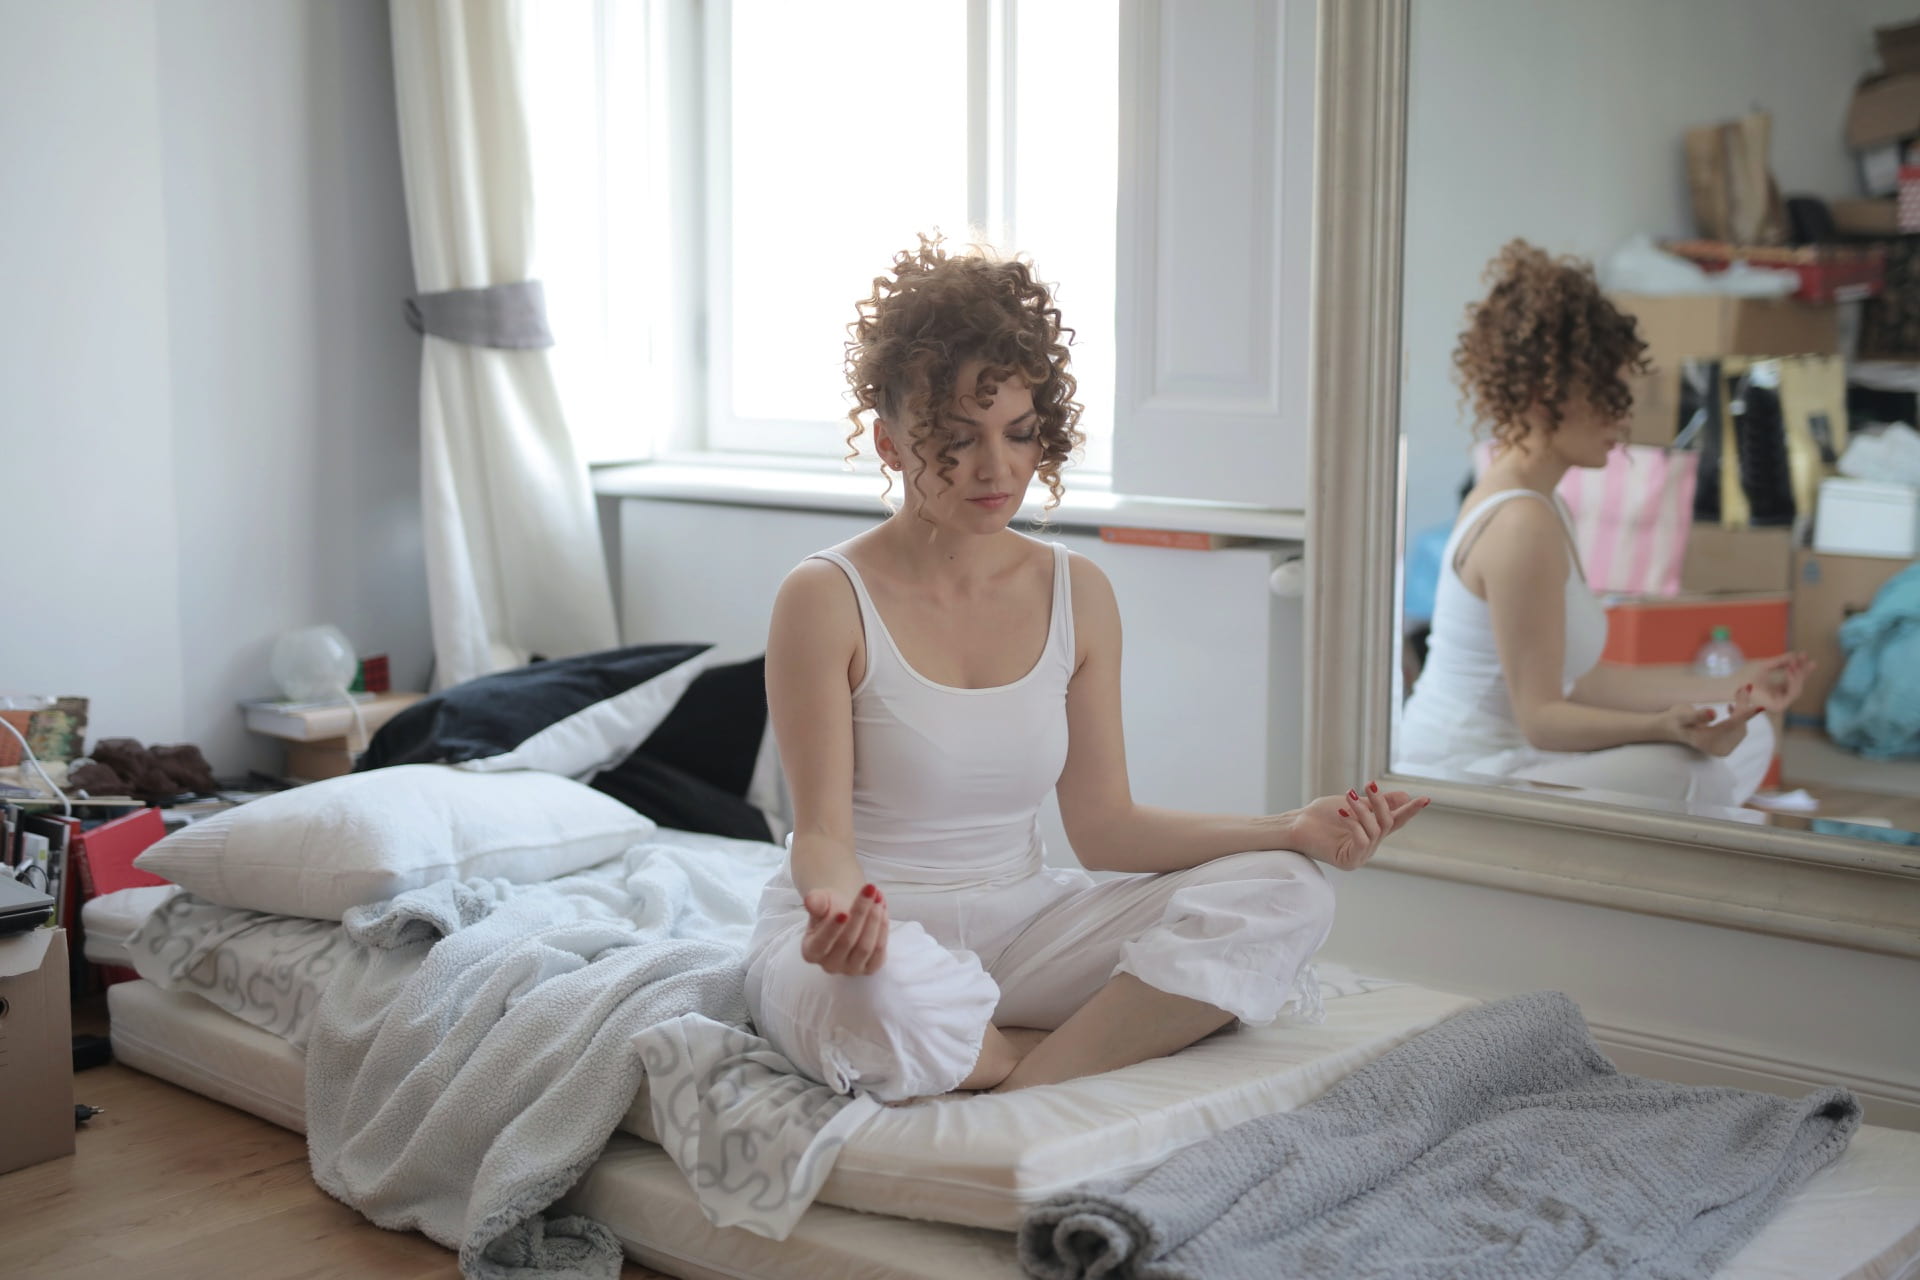 [calm-woman-in-lotus-pose-meditating-after-awakening-at-home]